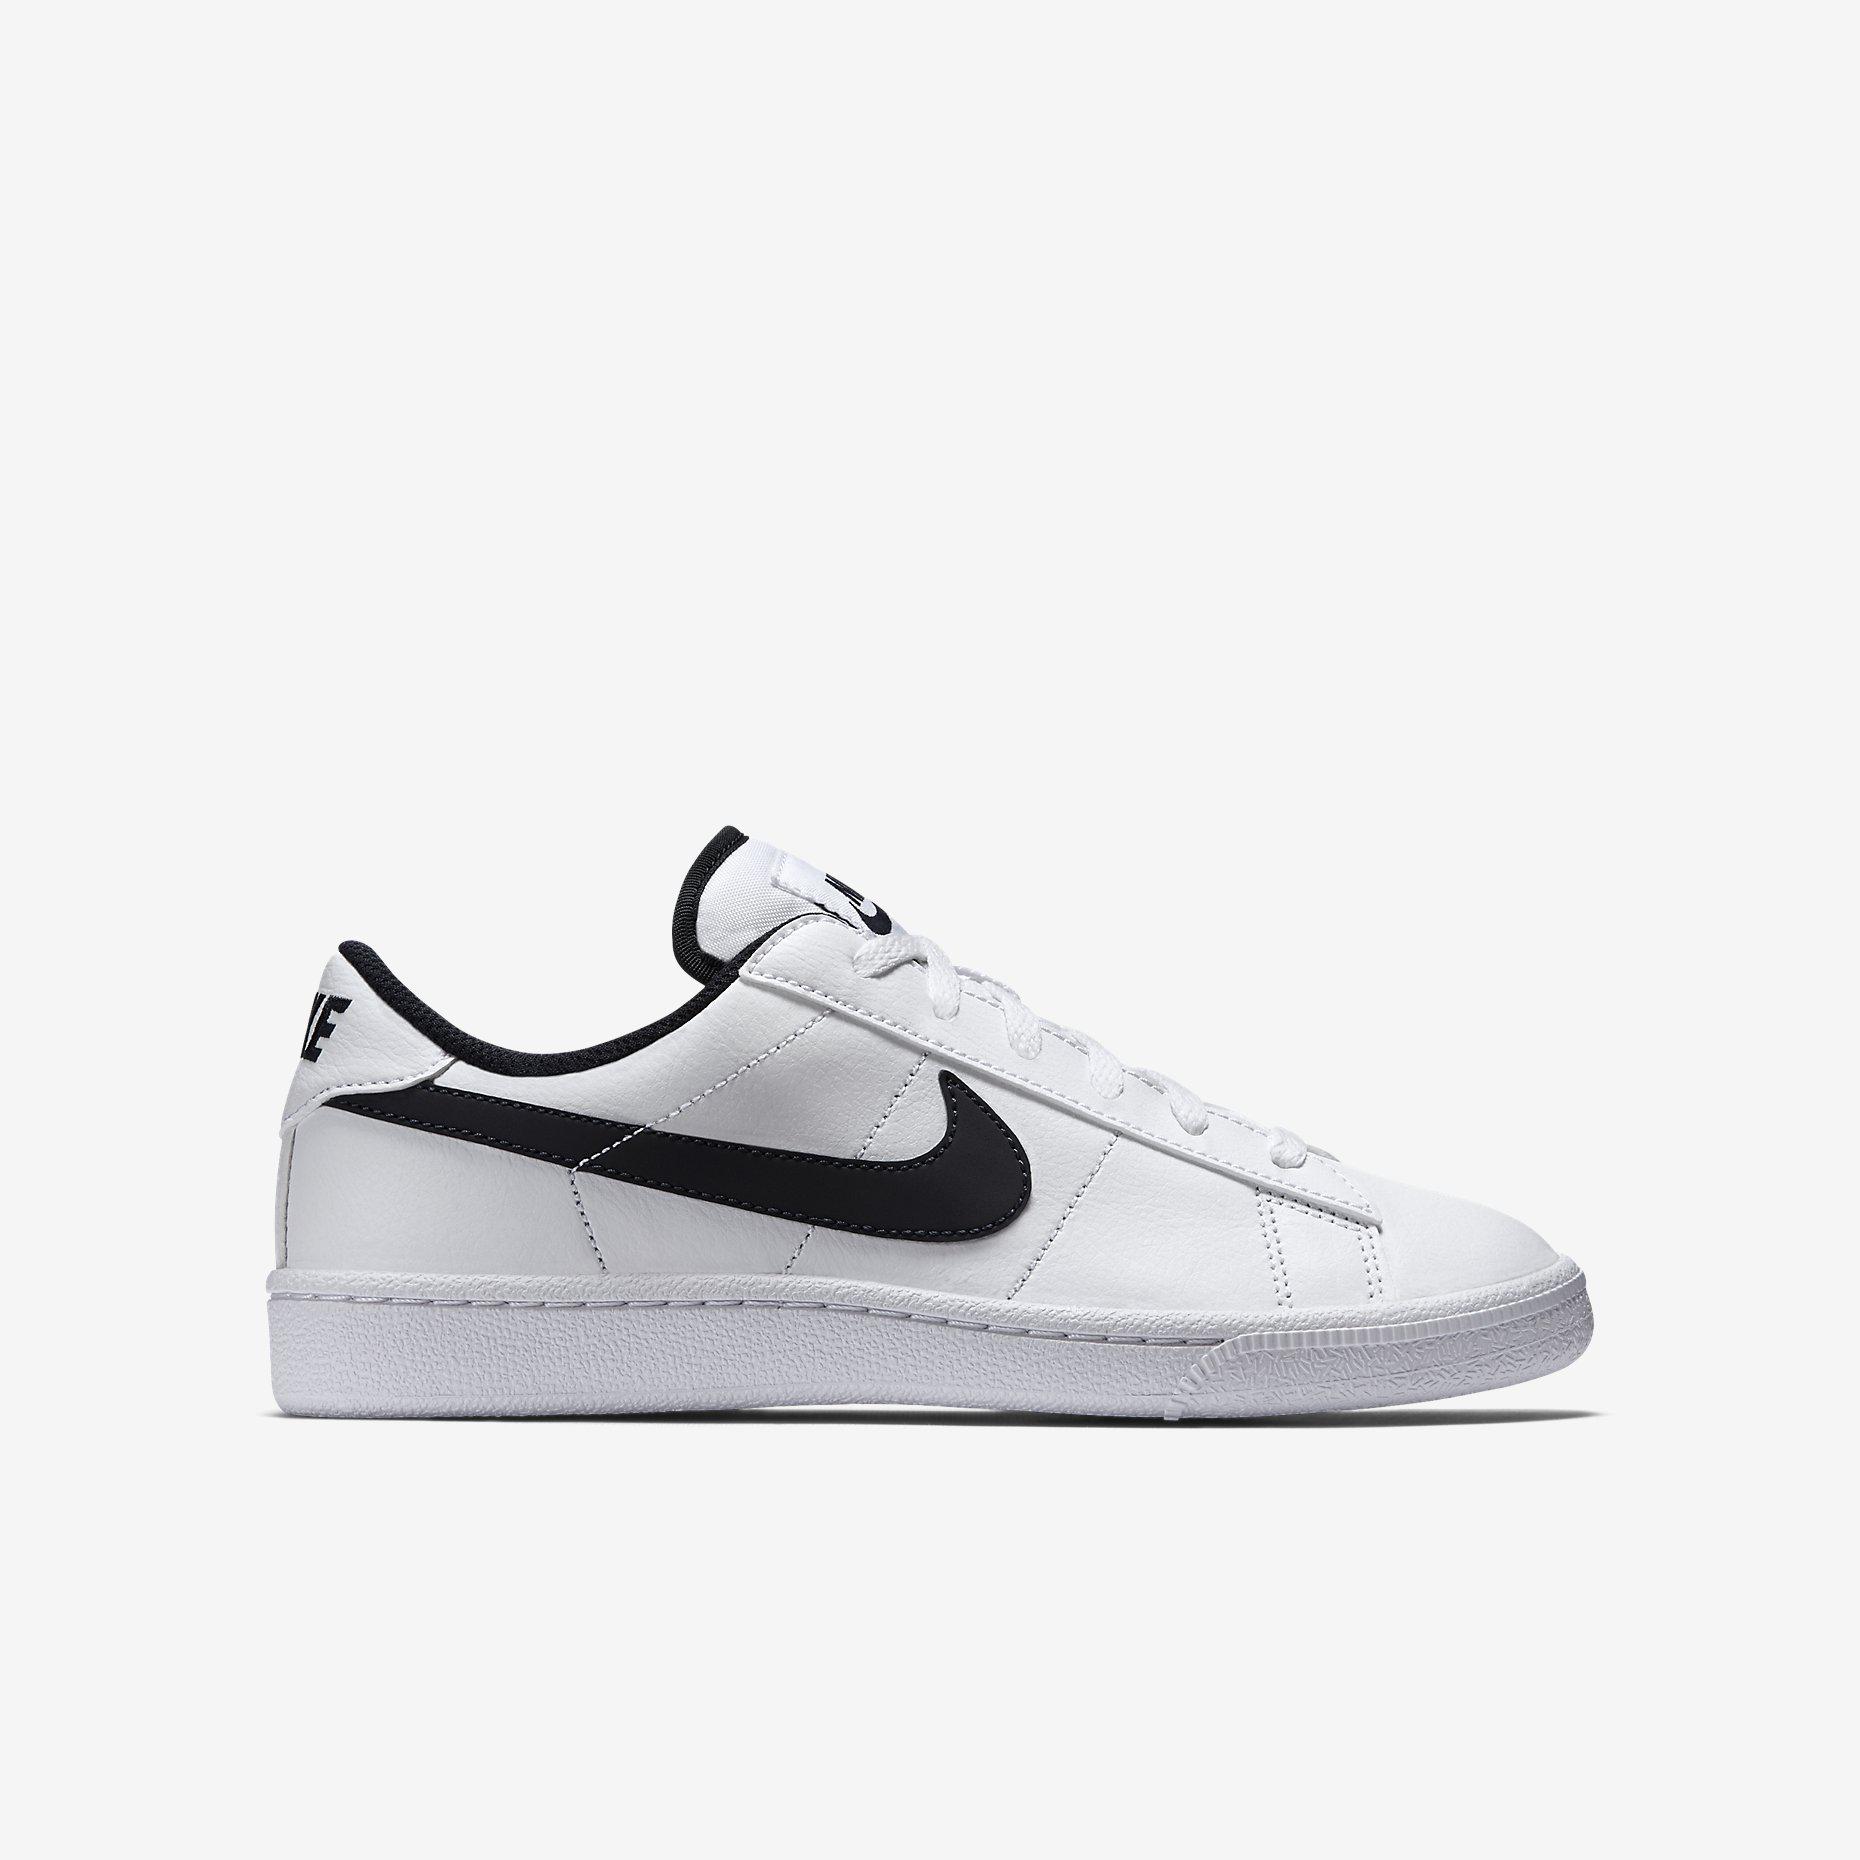 Nike Boys Classic Tennis Shoes - White/Obsidian - Tennisnuts.com